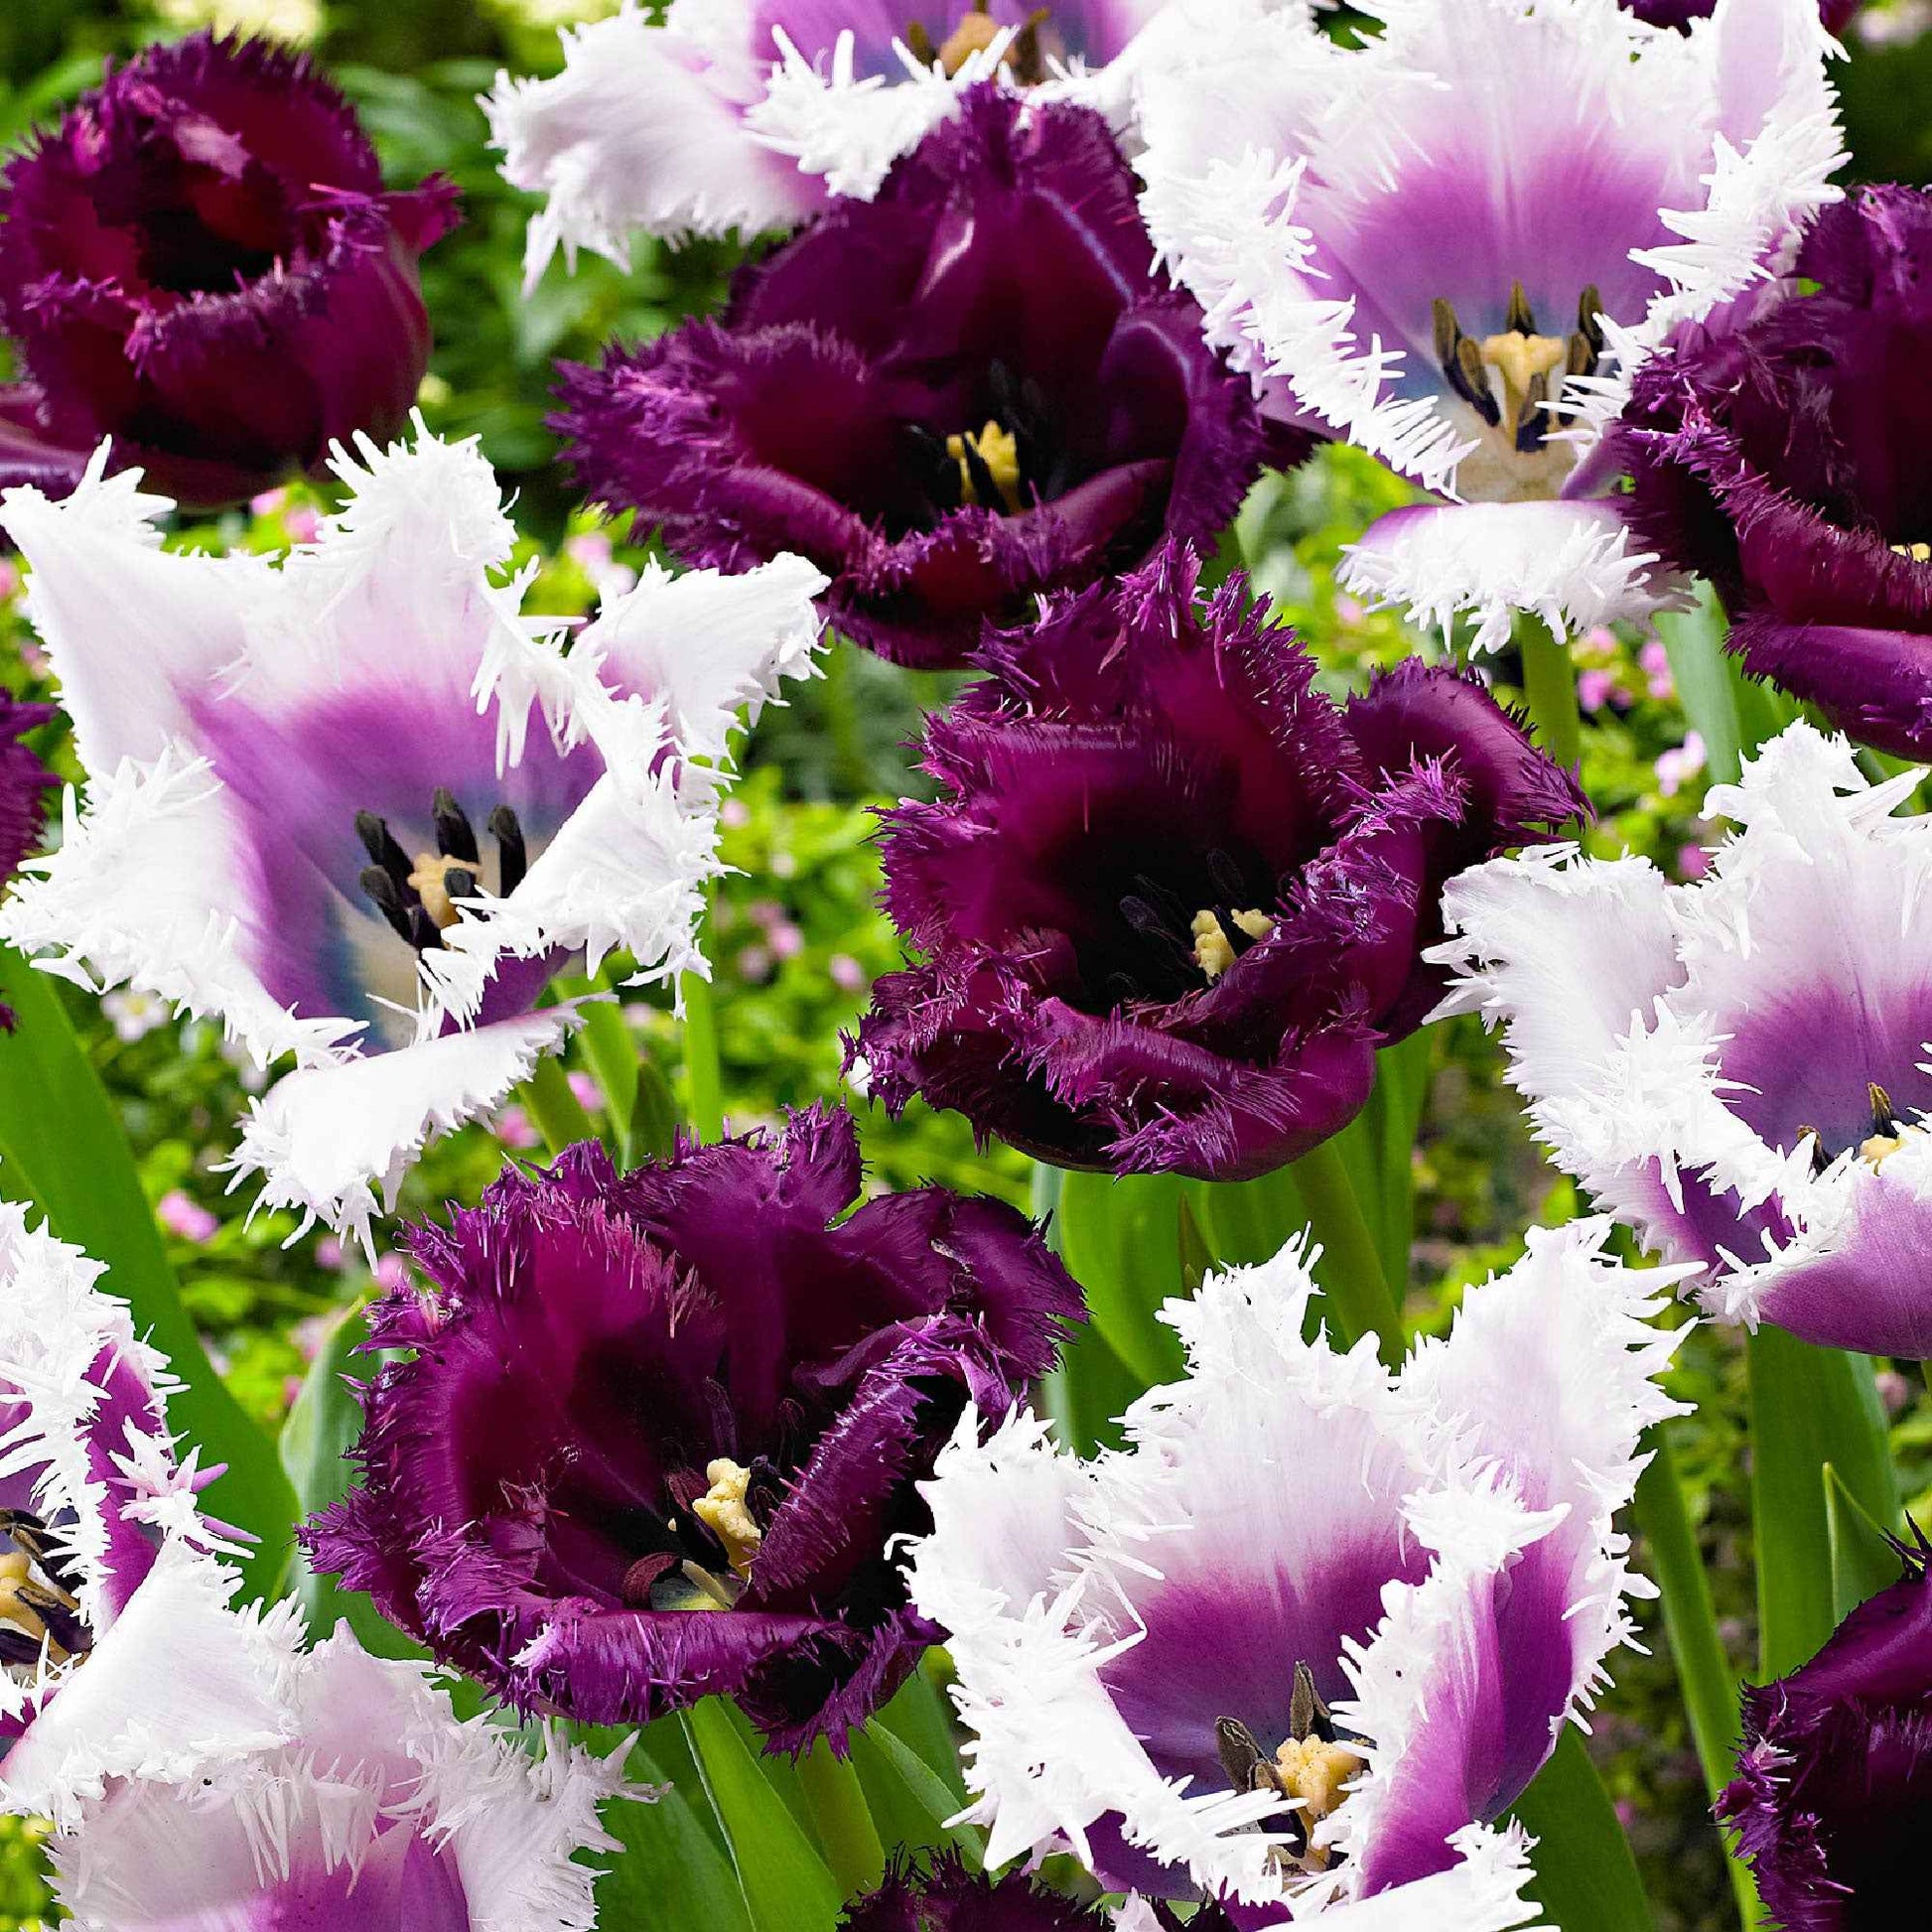 15x Tulipes Tulipa - Mélange 'Van Gogh' violet-blanc - Bulbes de fleurs populaires